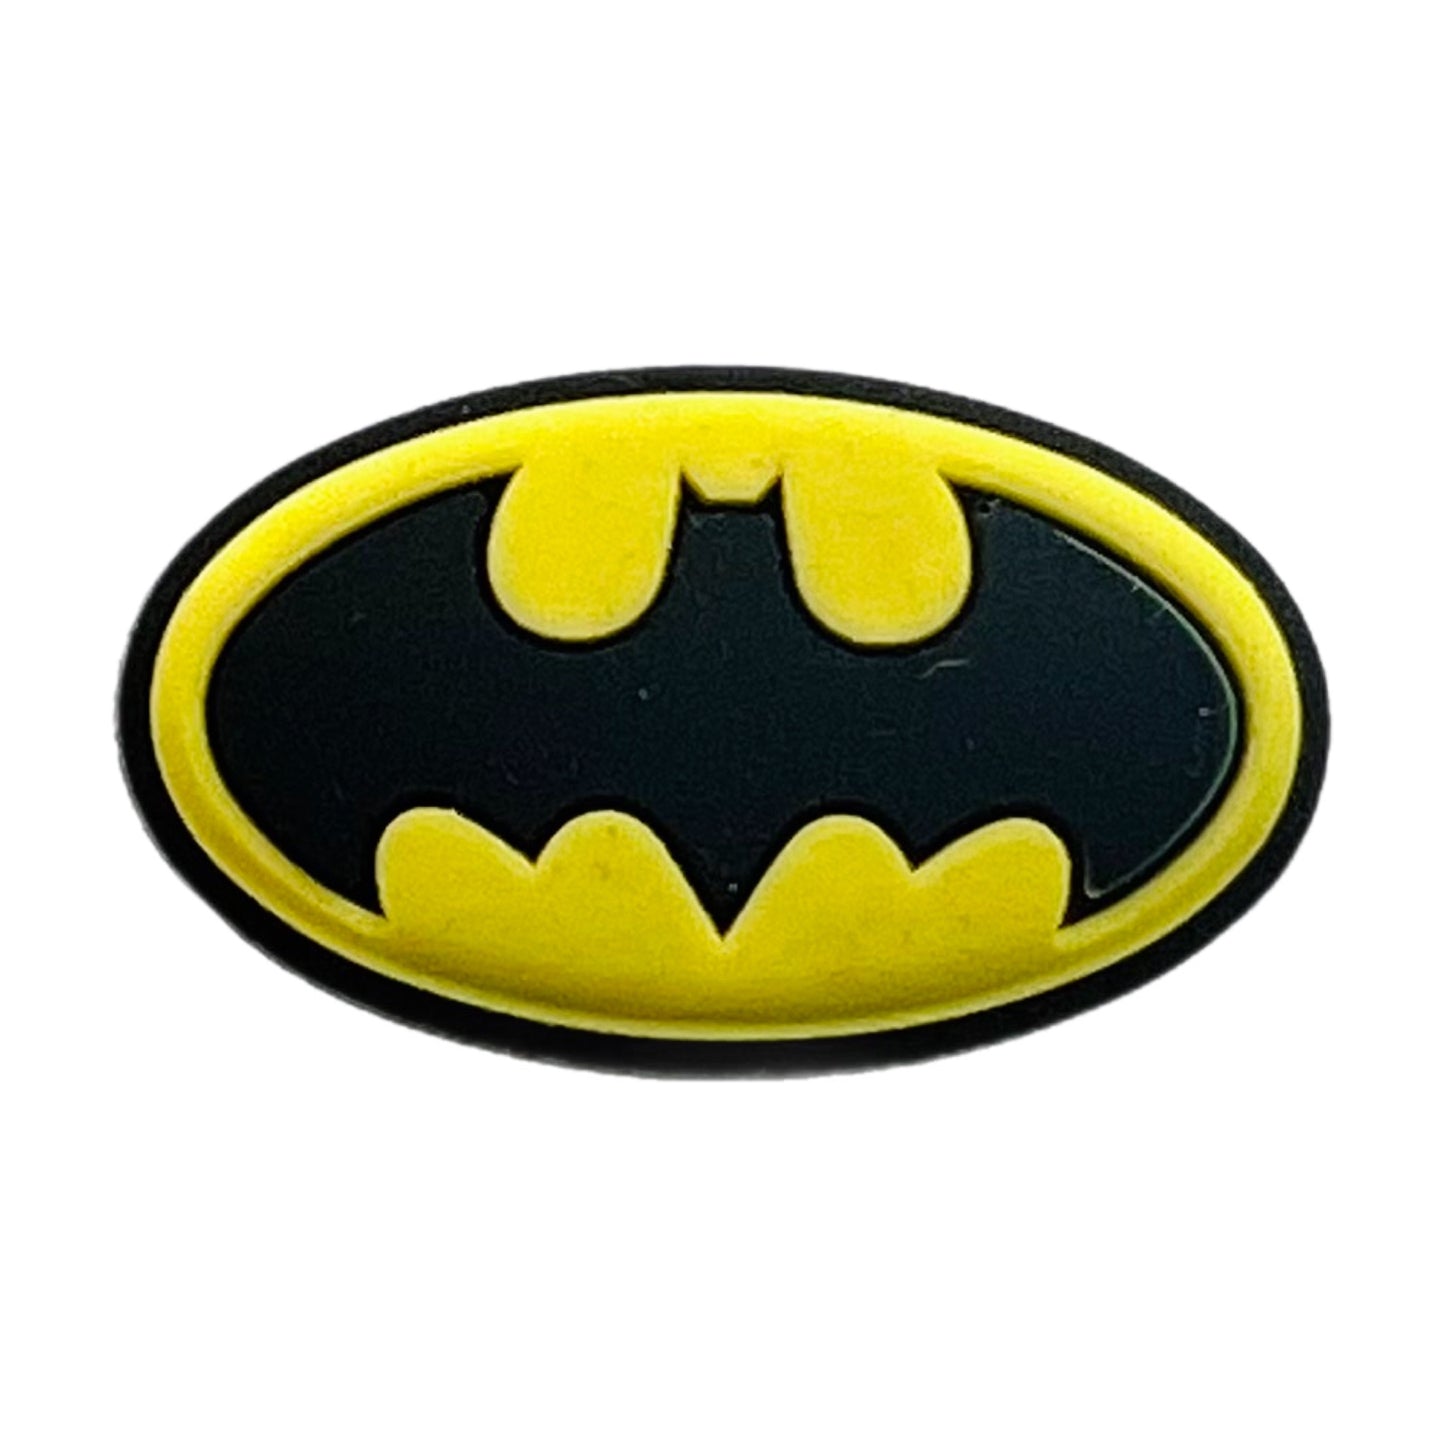 Batman Shoe Charm